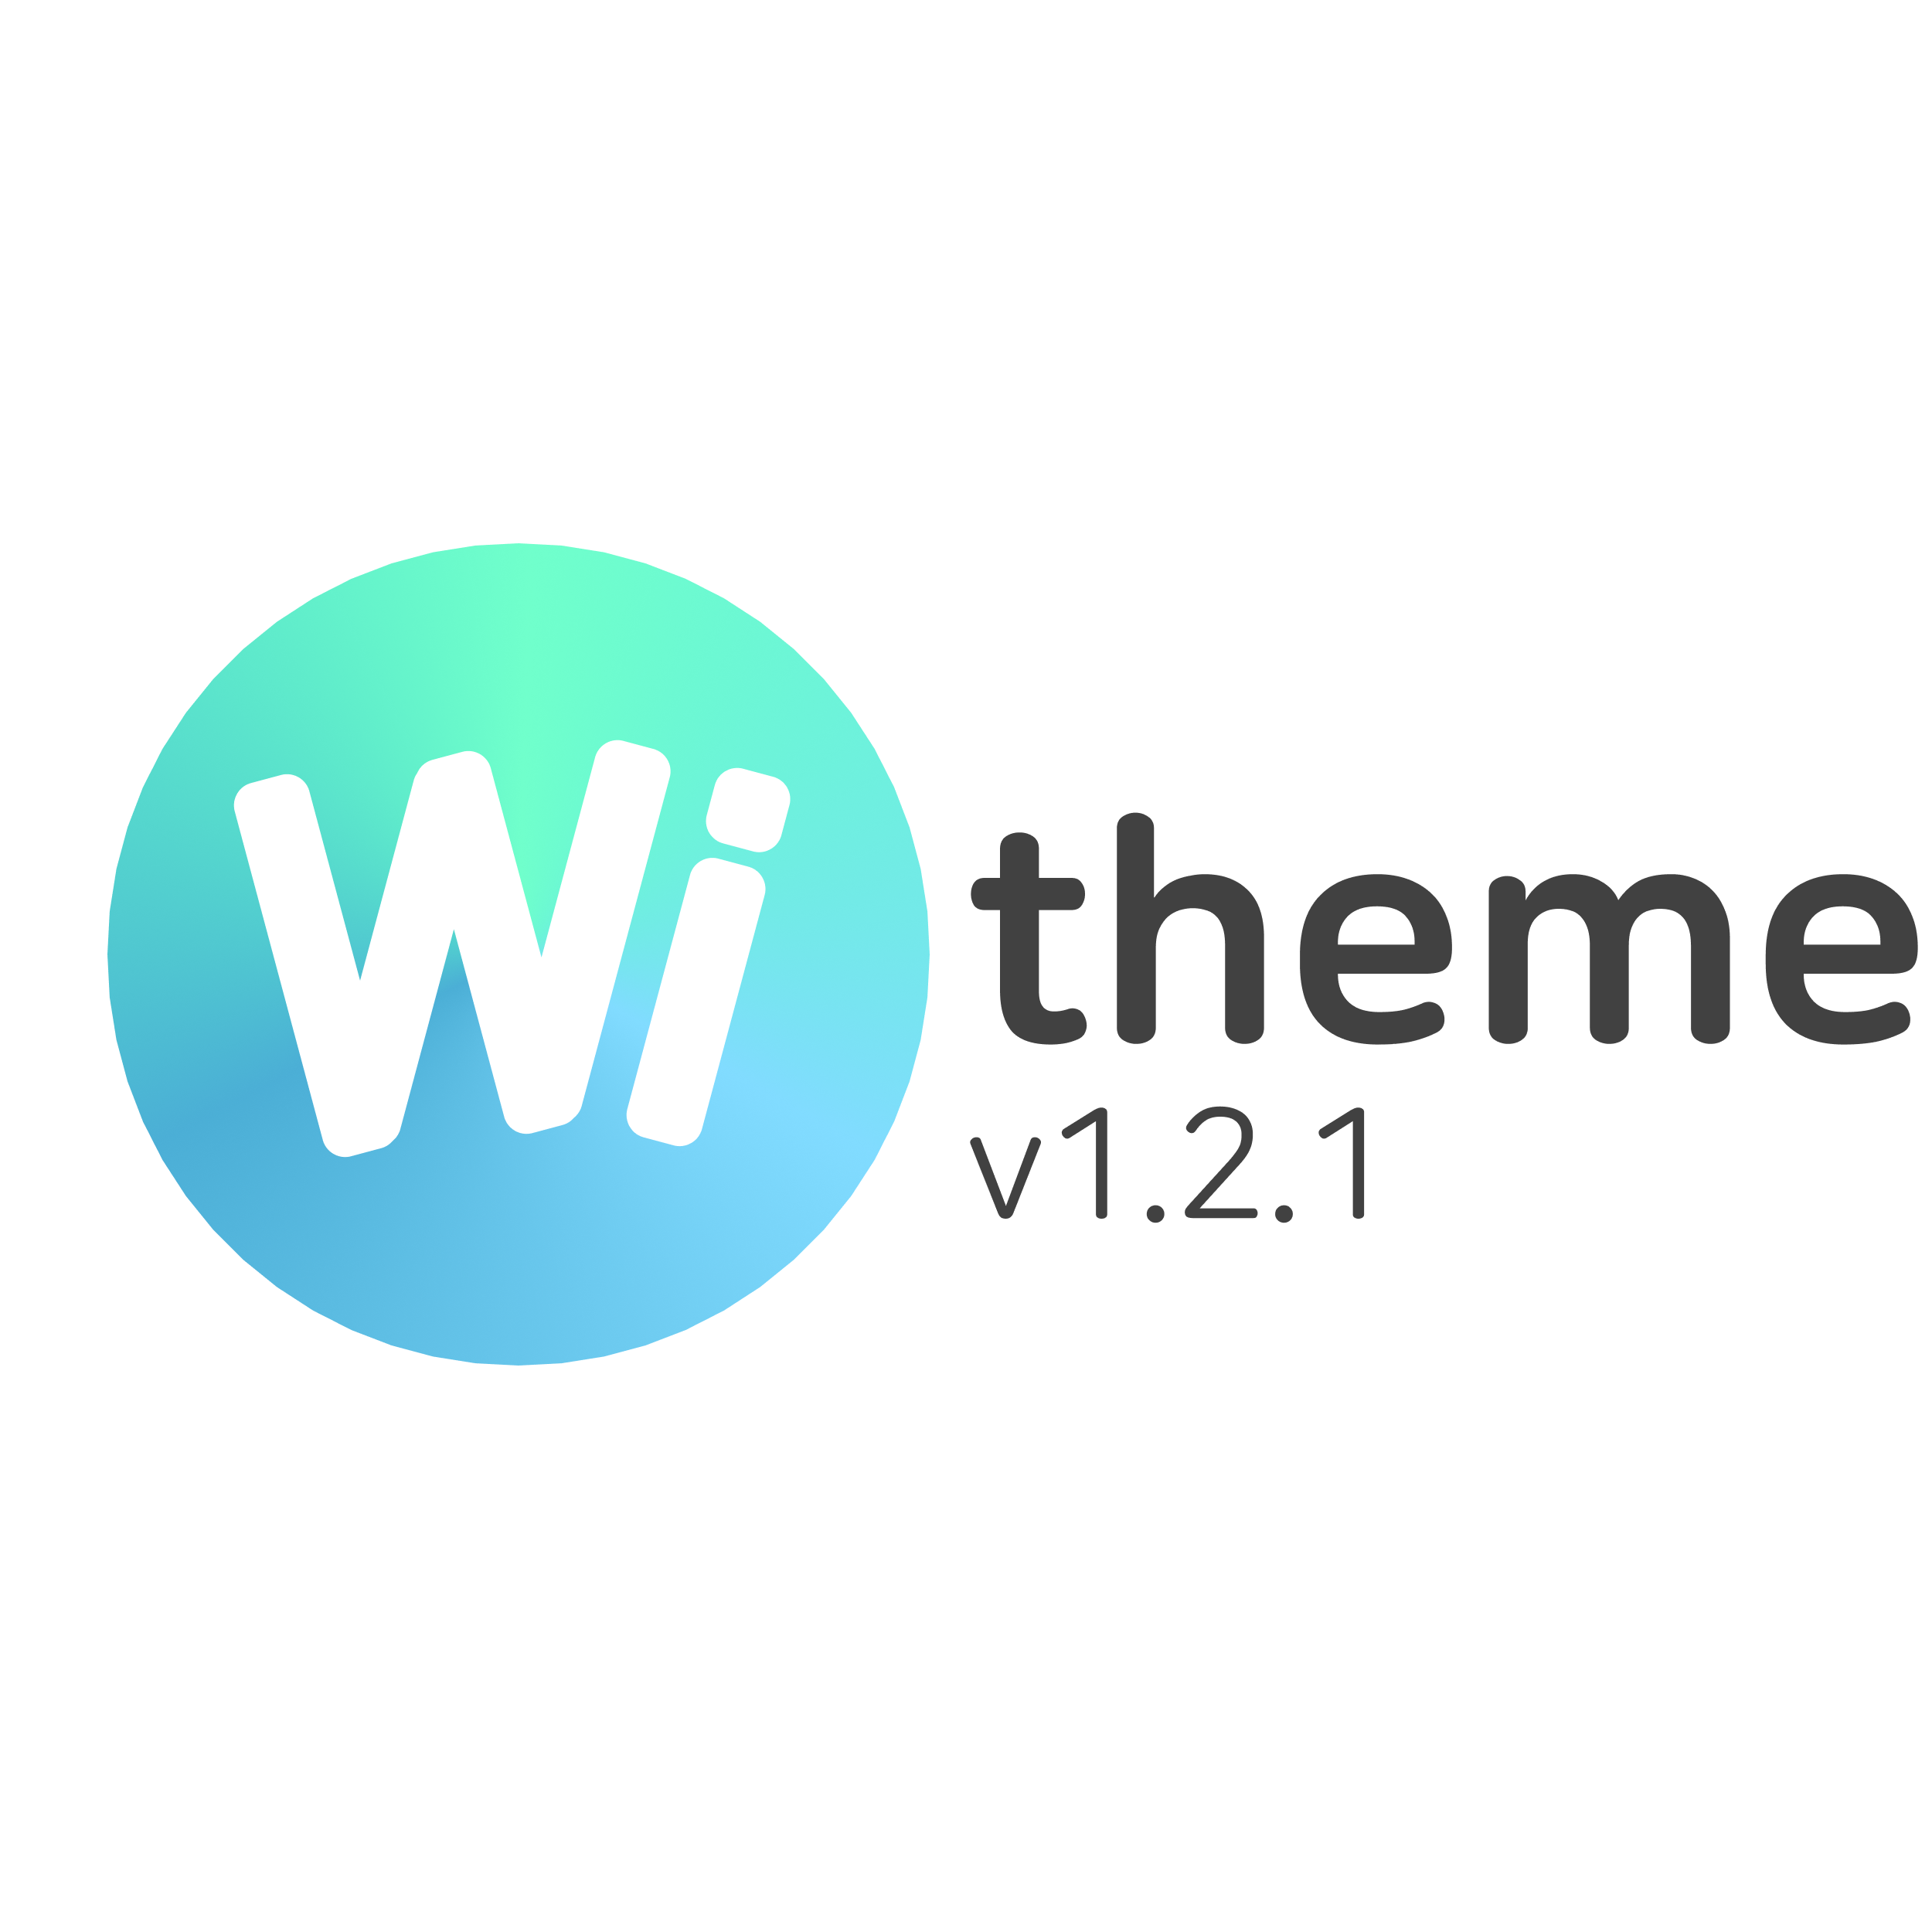 Wi theme 1.2.1 업데이트 사항 1